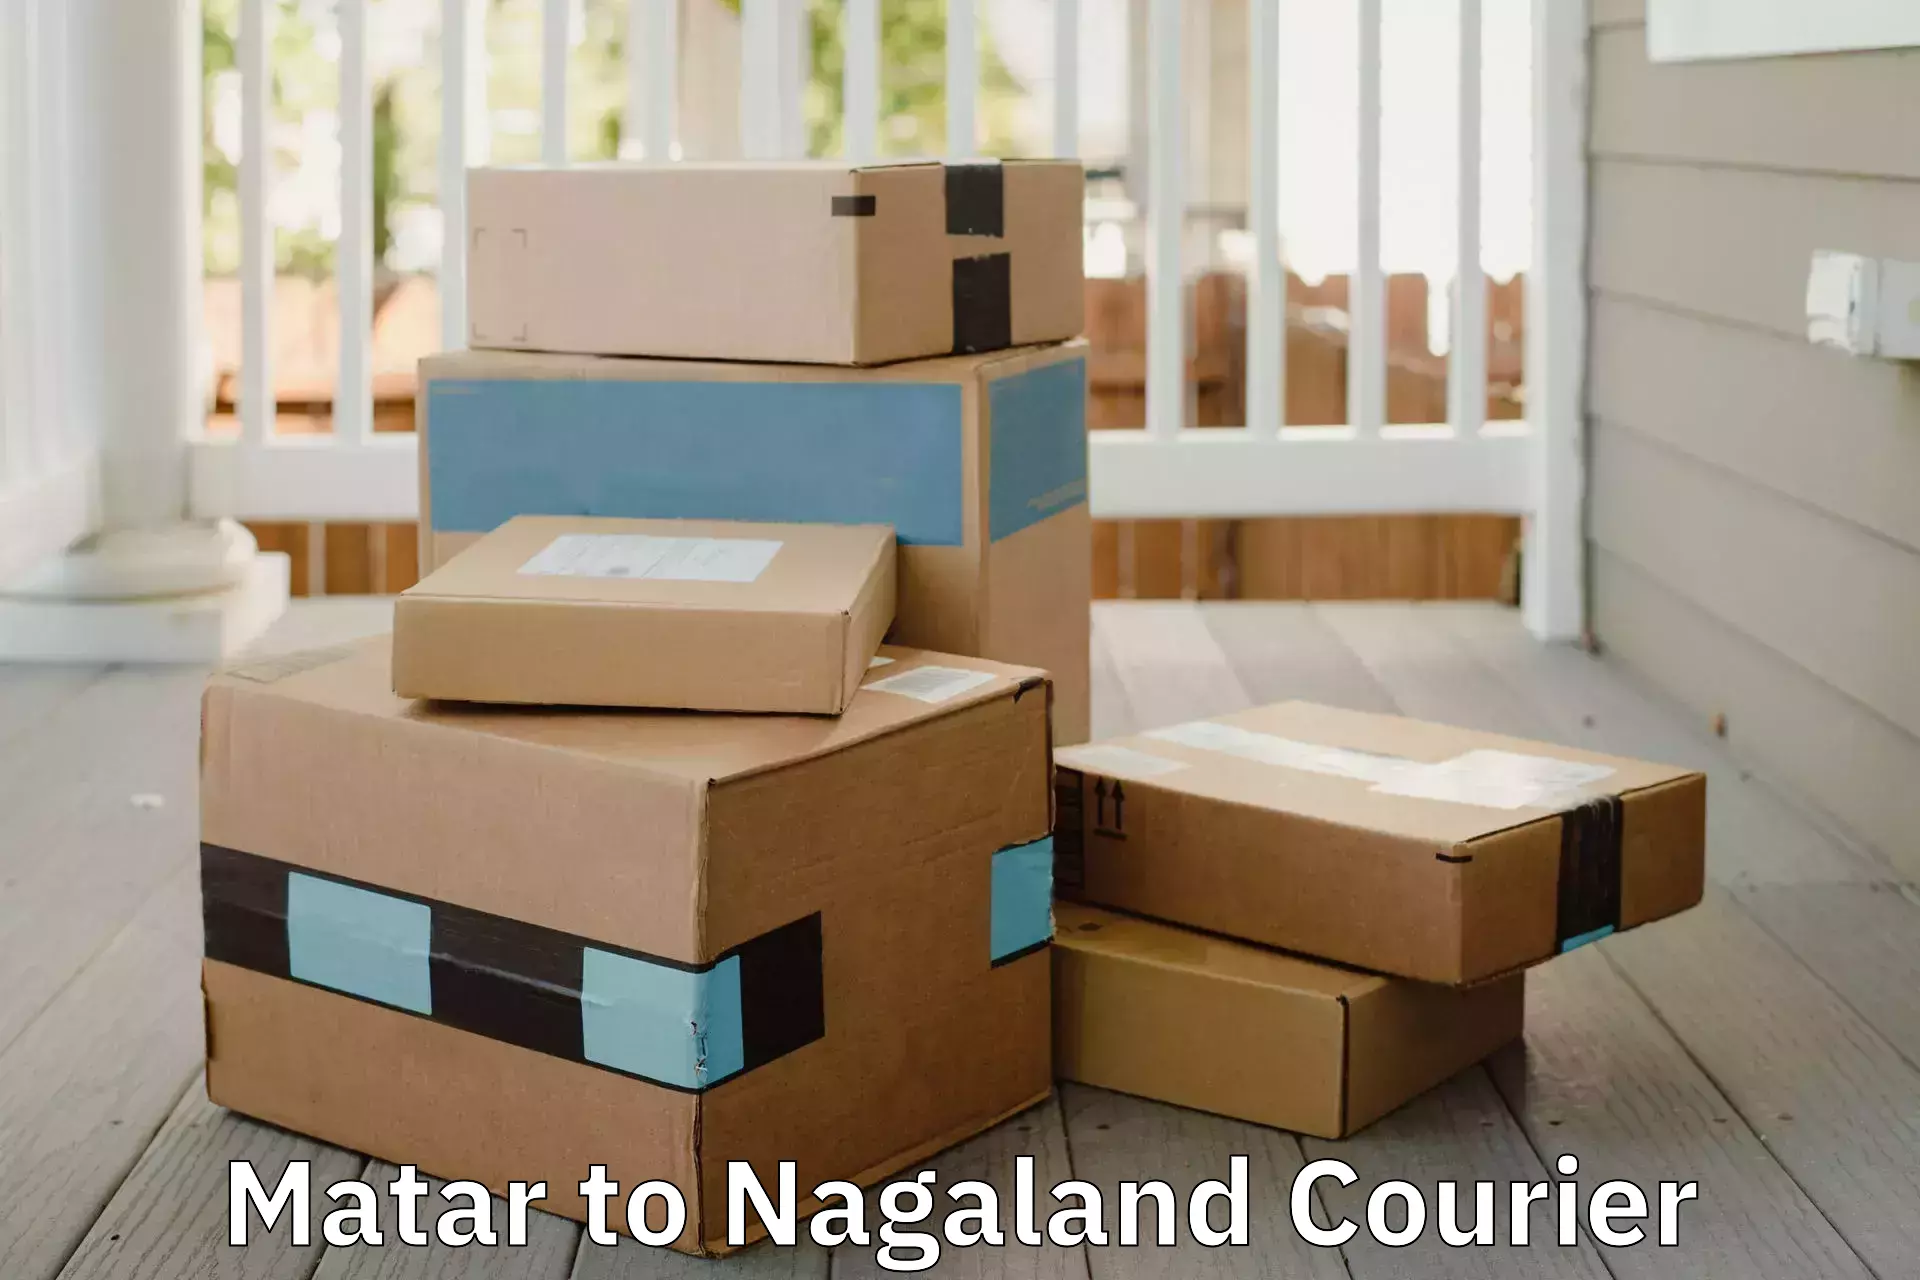 Home moving experts Matar to NIT Nagaland